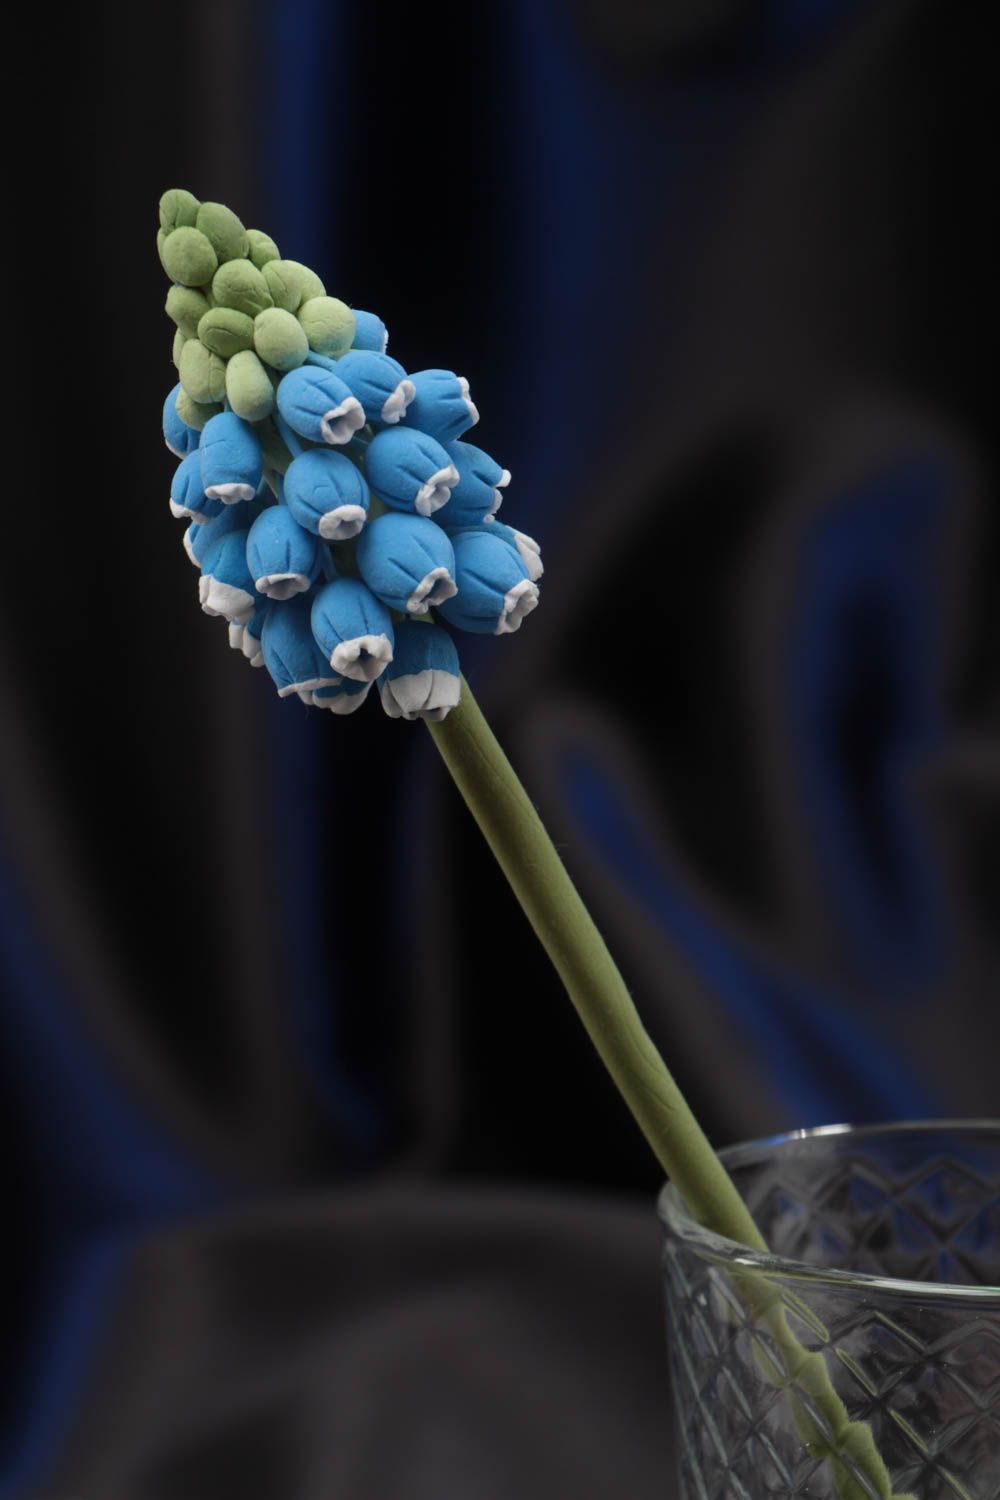 Цветок из японской полимерной глины мускари синий красивый небольшой хэнд мейд фото 1